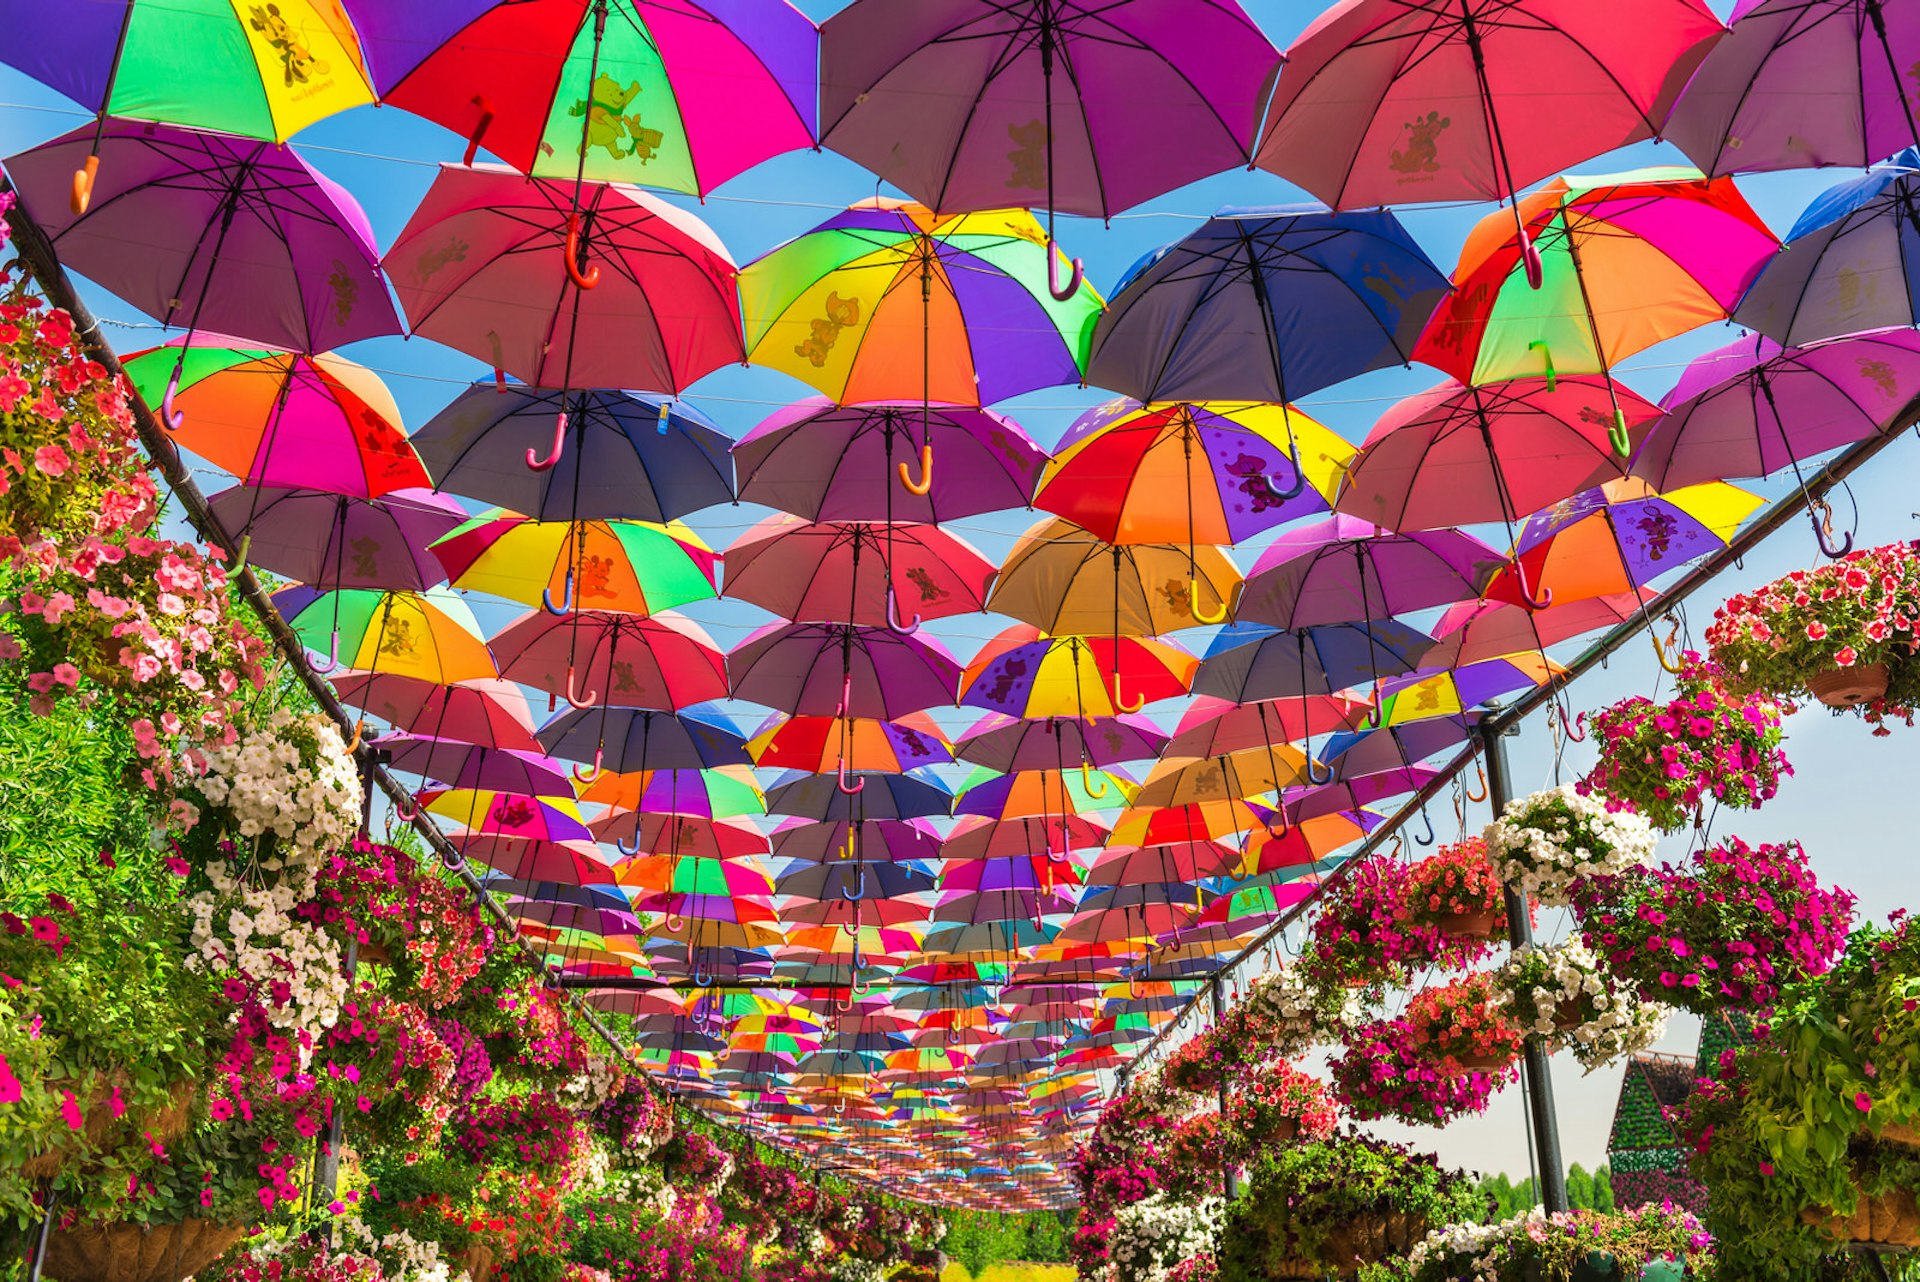 Multicoloured umbrellas shelter the path through Dubai Miracle Garden © dvoevnore / Shutterstock